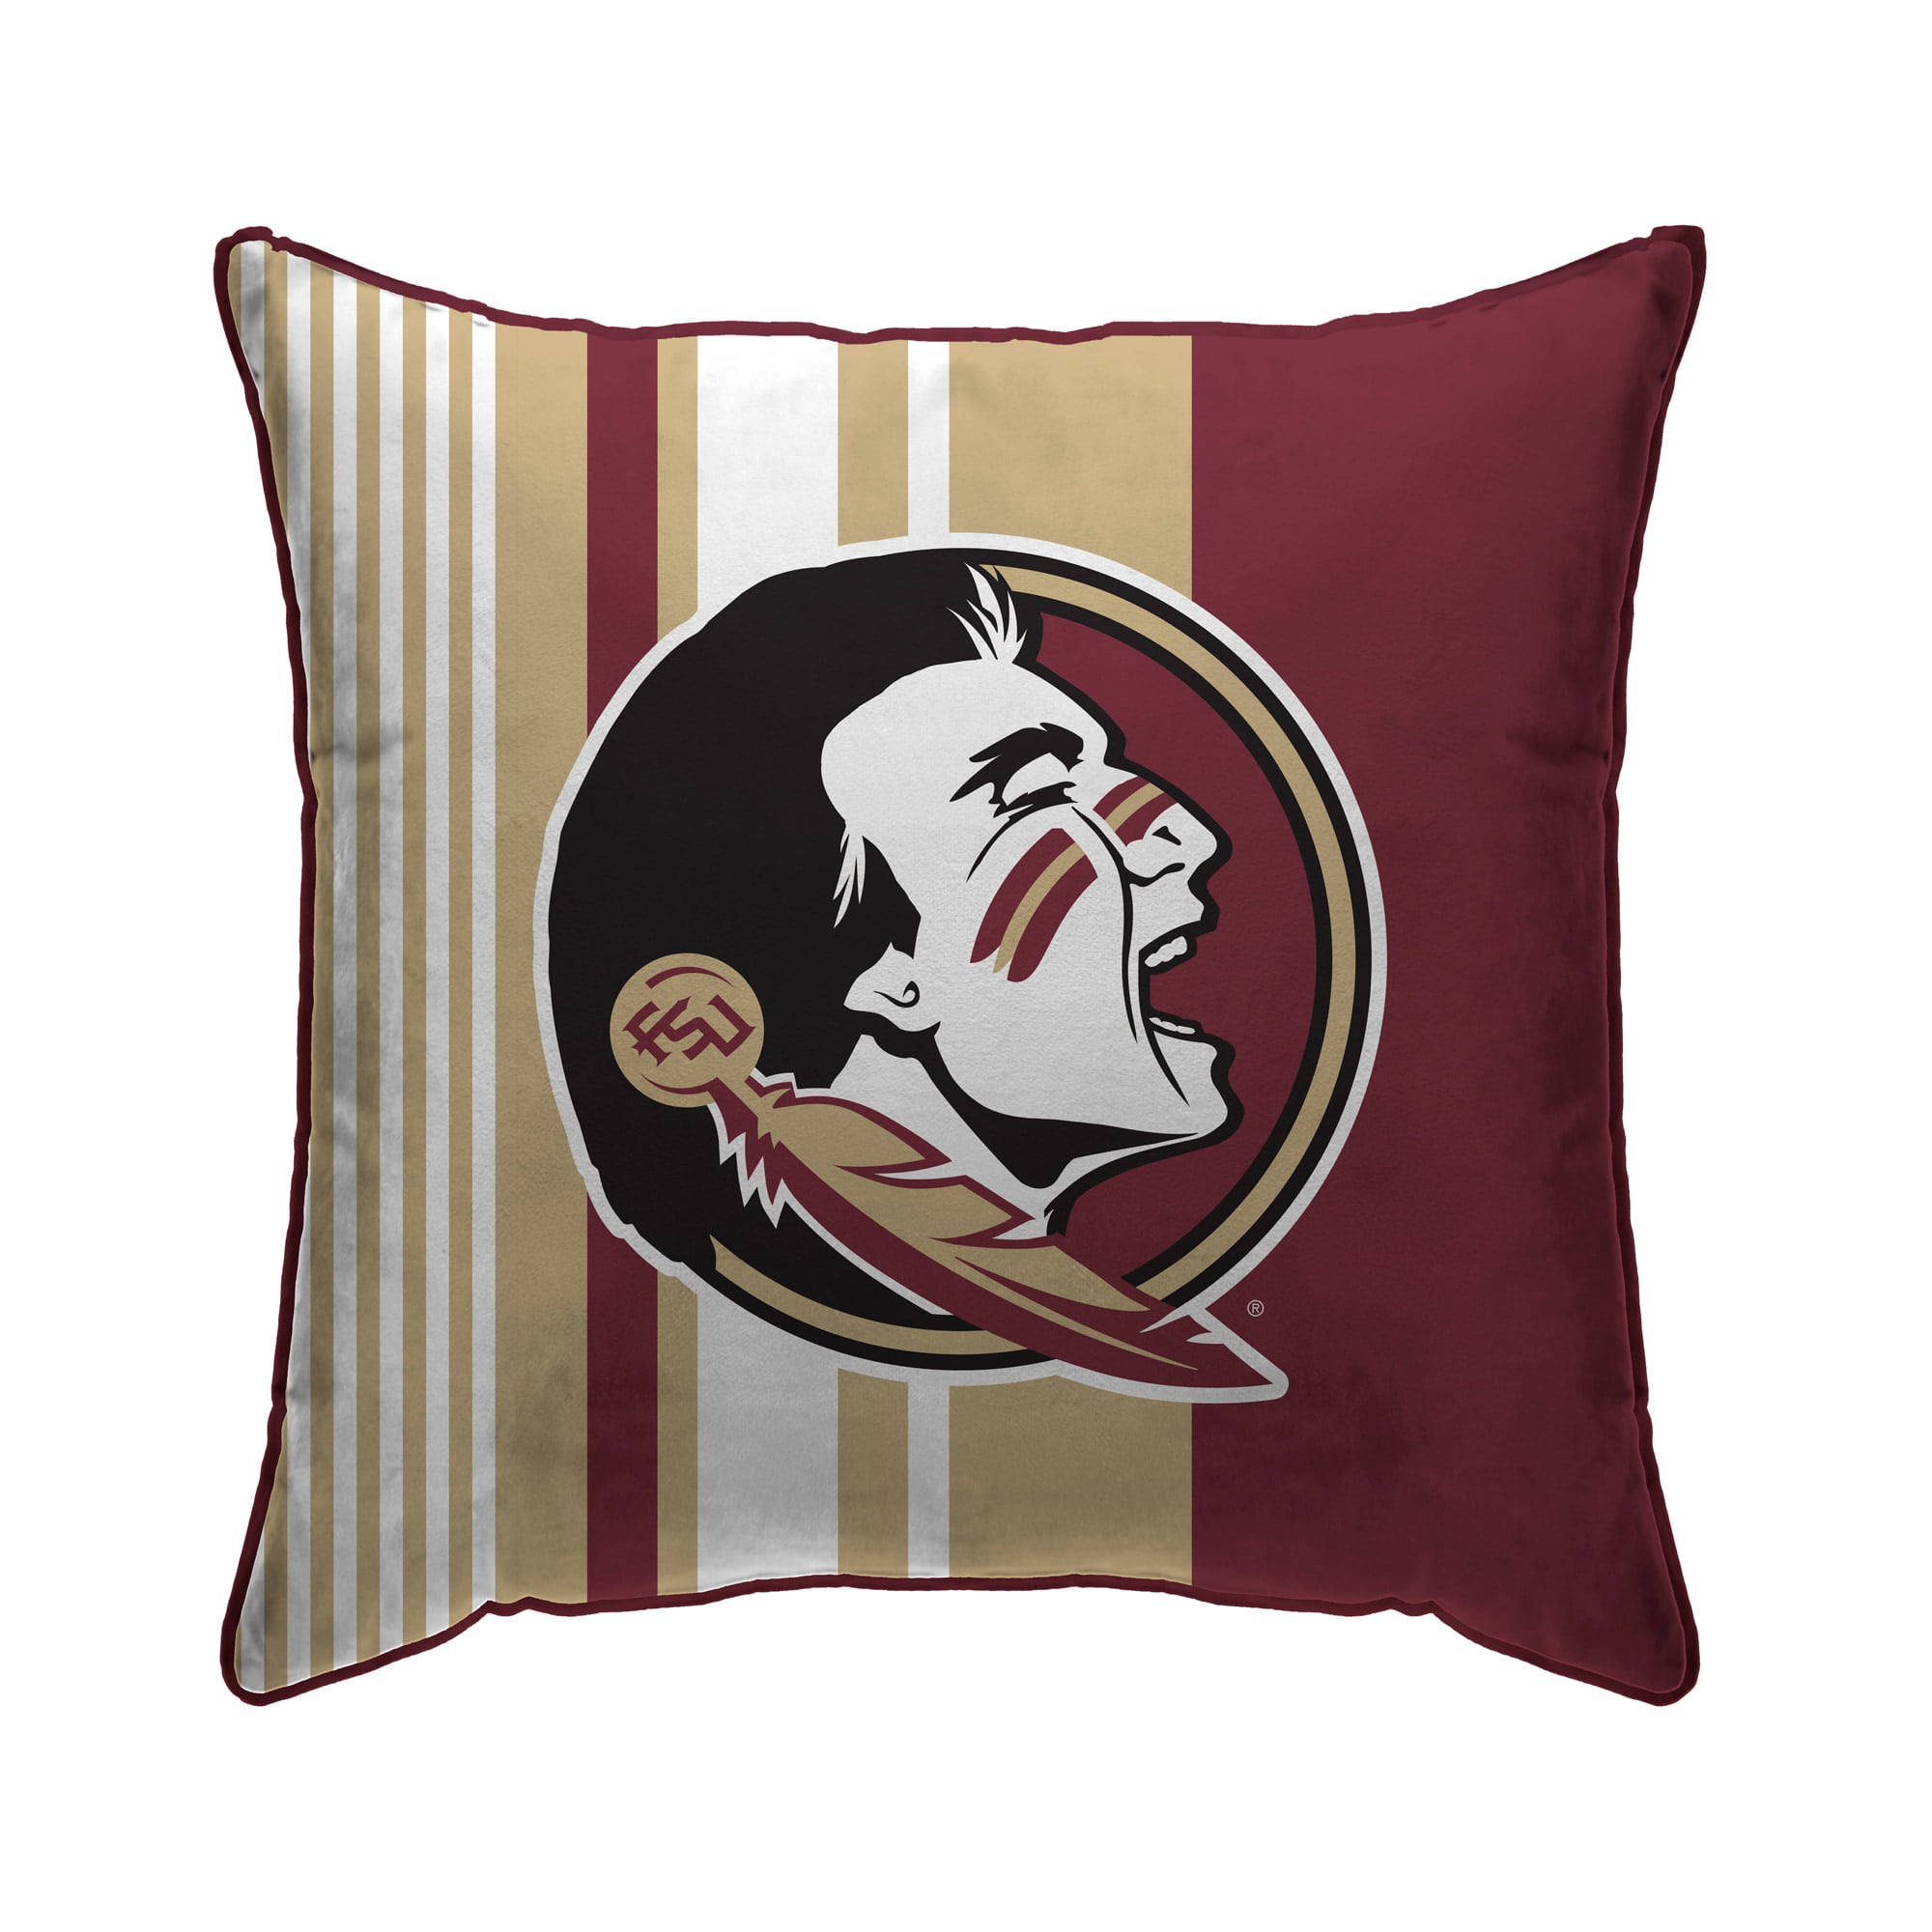 Florida State University Pillow Football Pillow FSU Pillow NCAA HANDMADE In USA 